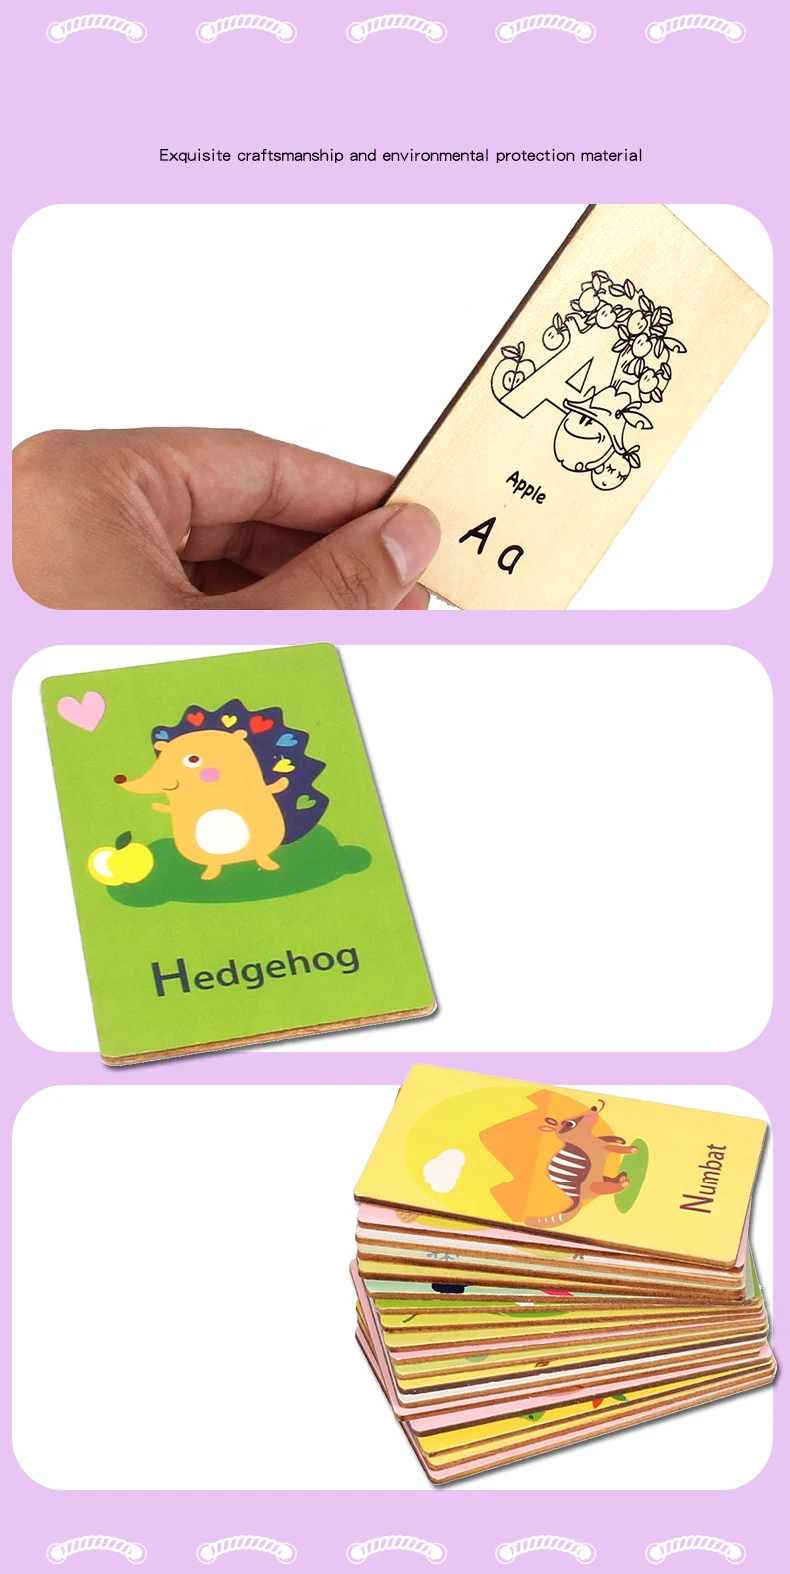 26 шт. Алфавит головоломка для детей познание головоломки игрушки мультфильм анимальпара совпадающая игра когнитивные карточки для развивающая игрушка